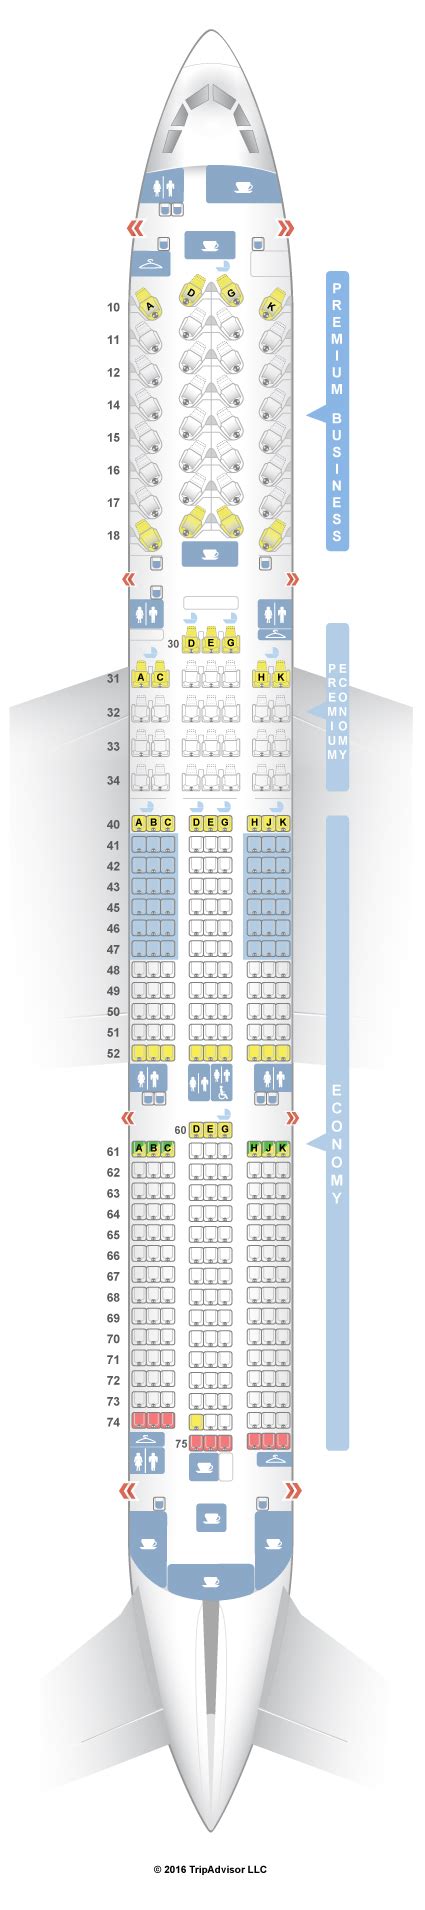 Seatguru Seat Map Finnair Airbus A350 900 350 Seating Charts Airbus